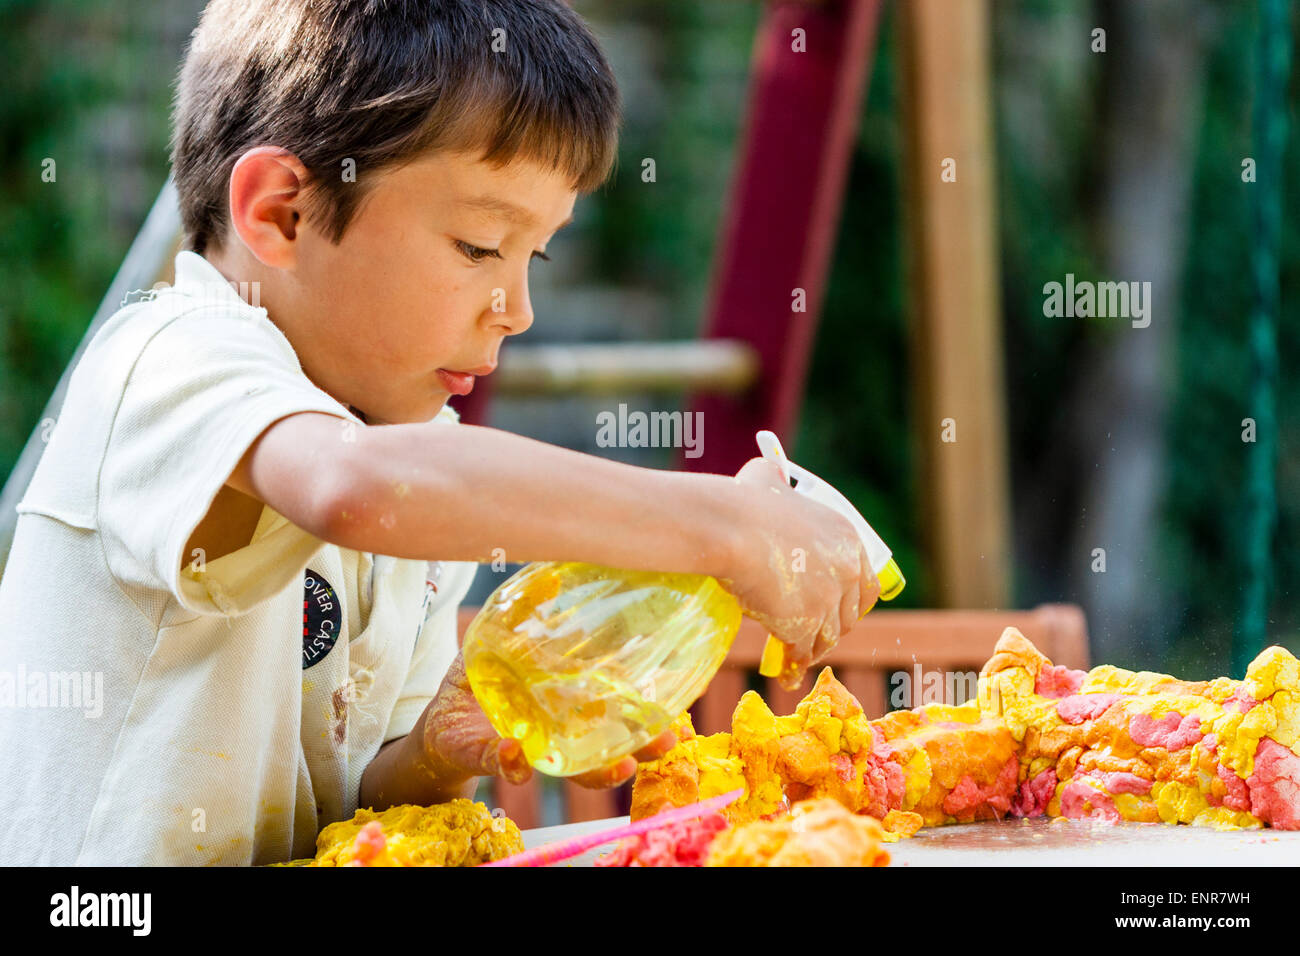 Nahaufnahme, von einem gemischten Rassenkind, Junge, asiatisch-kaukasischen, 7-8 Jahre alt, spielt im Freien, benetzt Spielteig auf einem Tisch mit einem Wasserspray. Stockfoto